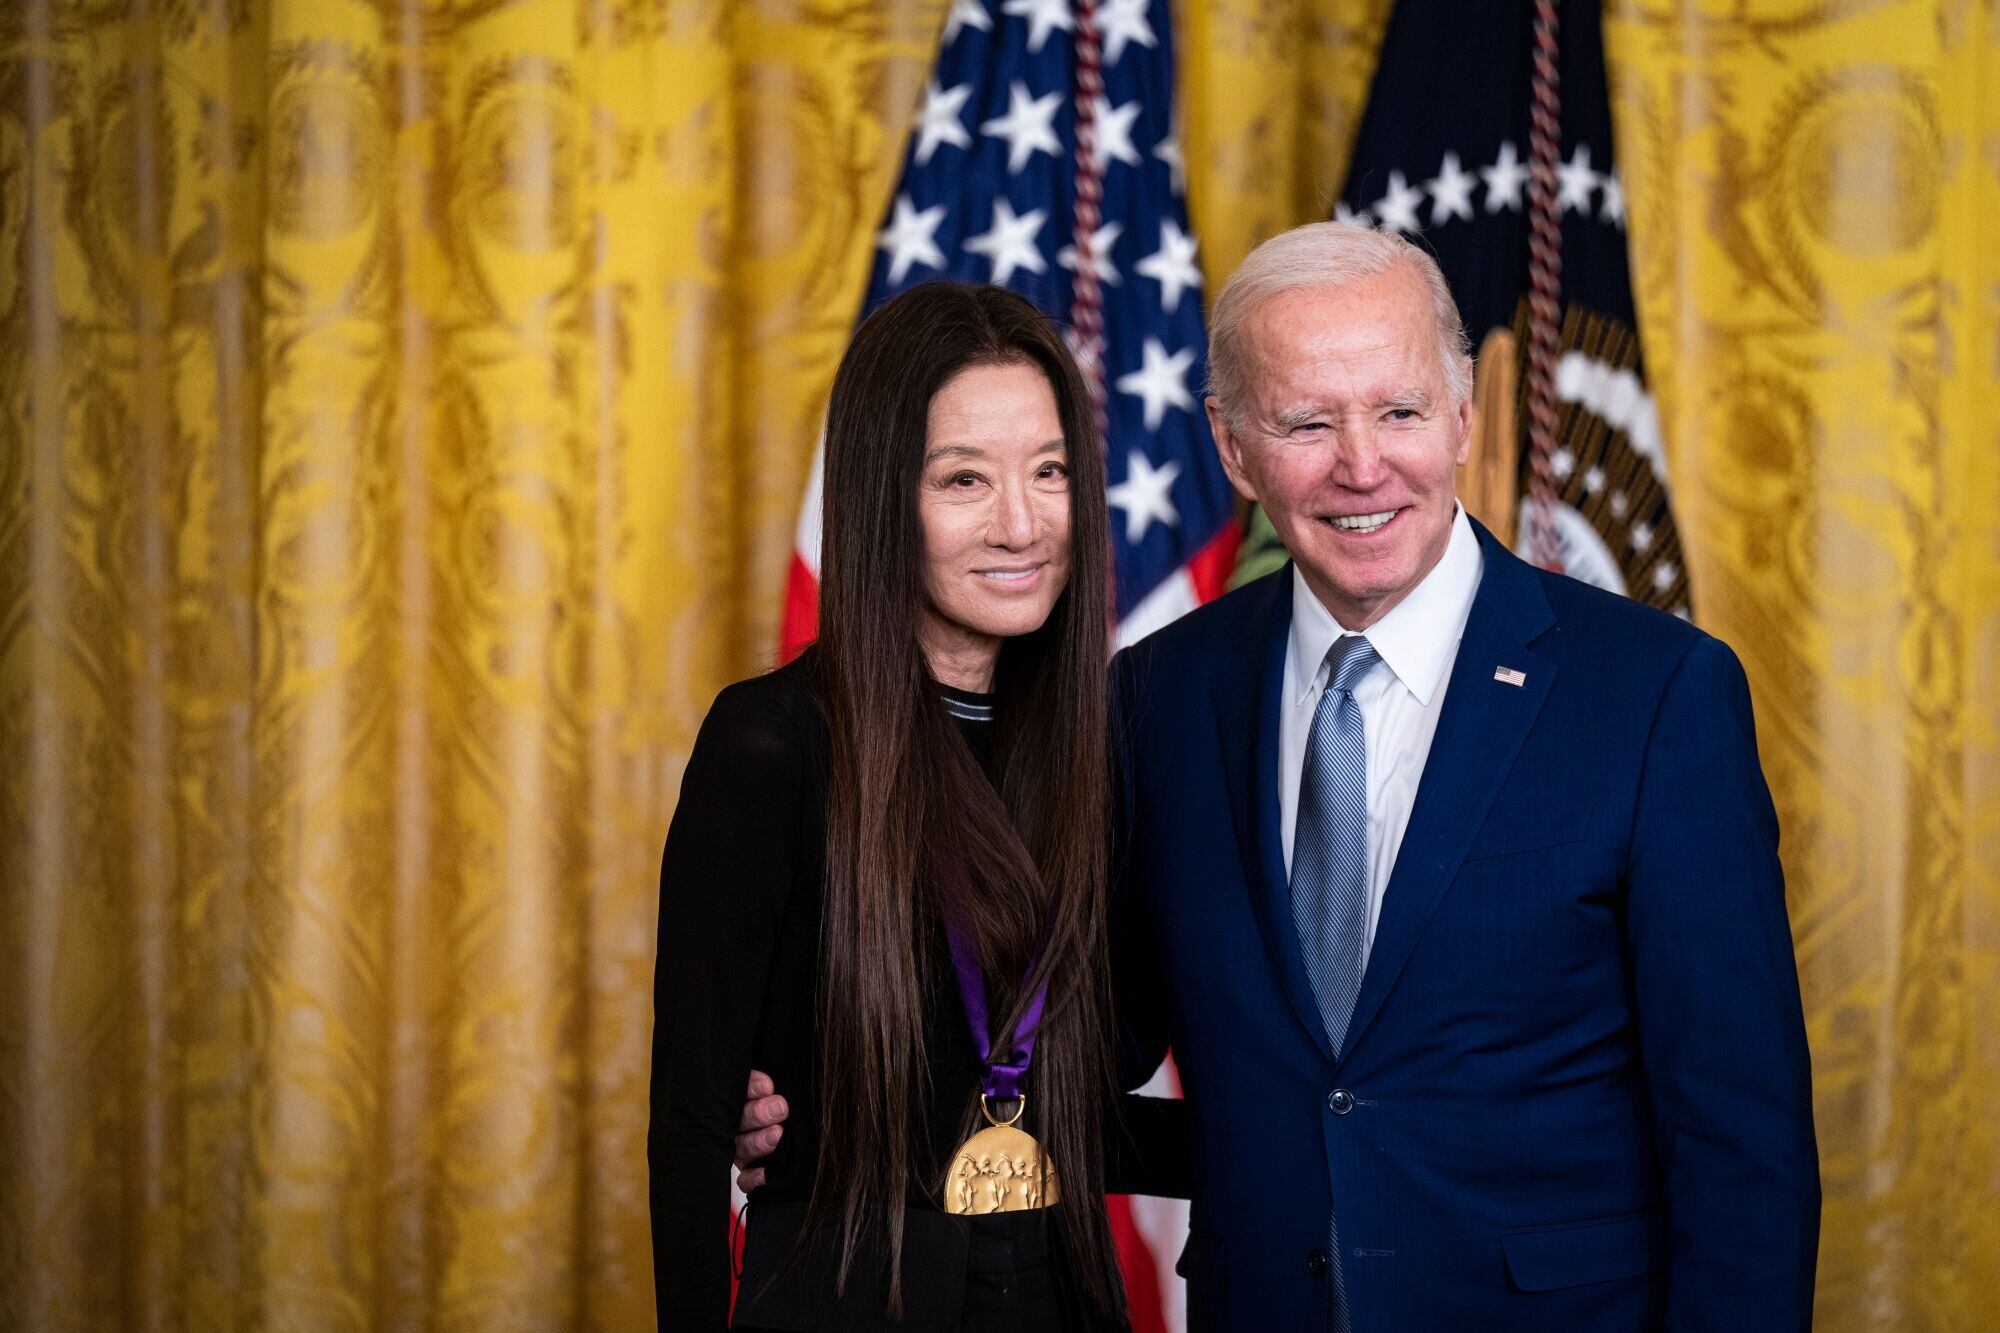 La diseñadora Vera Wang tras recibir la Medalla Nacional por su contribución a las Bellas Artes de manos del presidente de EE UU Joe Biden, el 21 de marzo en la Casa Blanca (Washington).